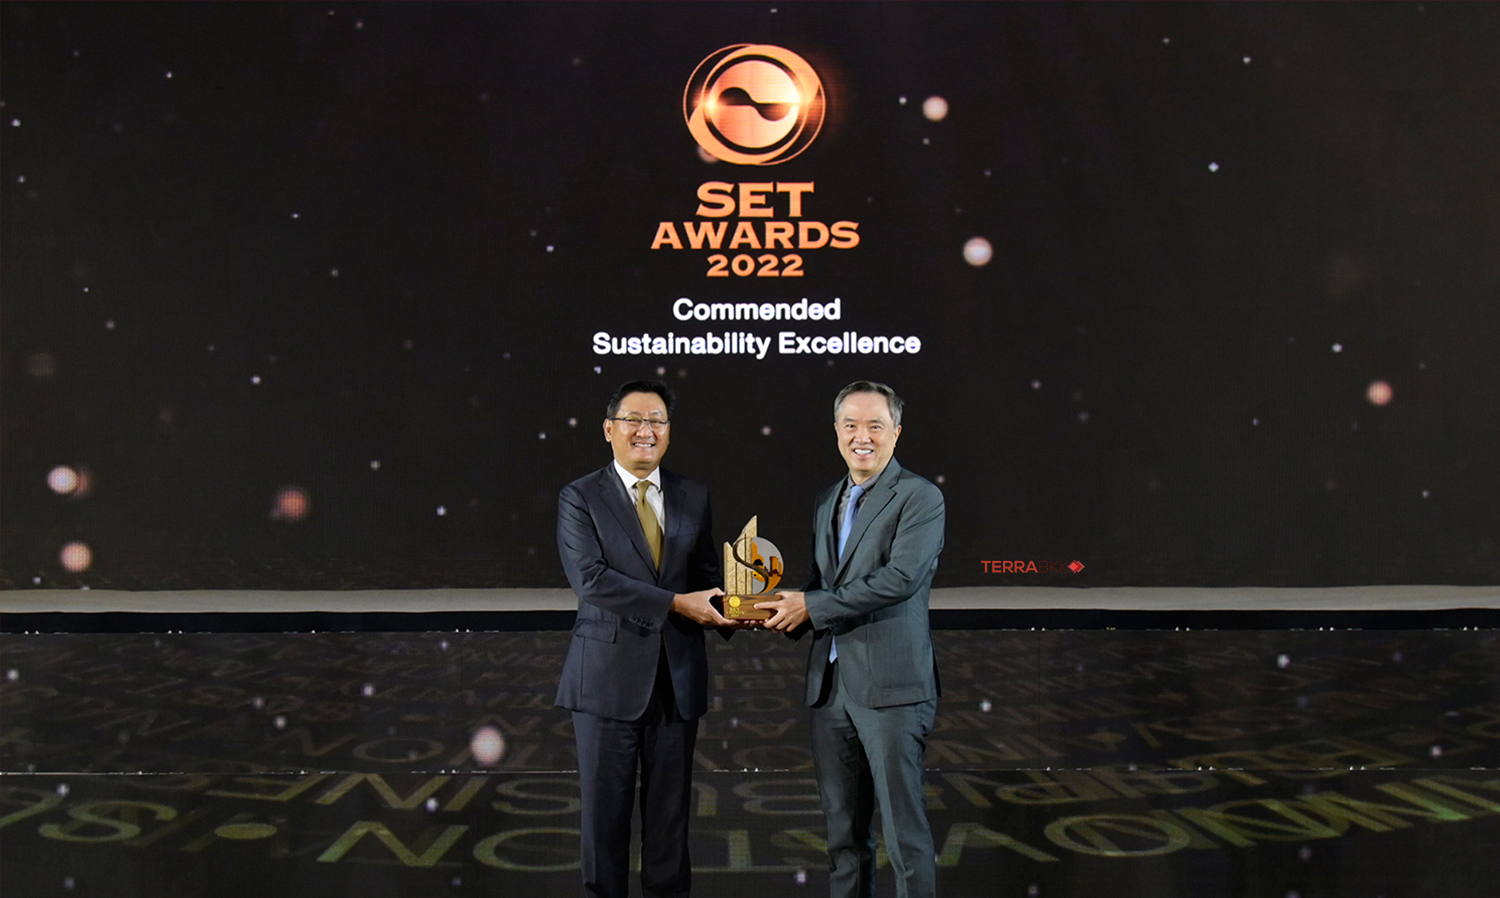 โฮมโปร คว้ารางวัลด้านความยั่งยืน Commended  Sustainability Awards ในงานประกาศผลรางวัล SET Awards 2022 จากตลาดหลักทรัพย์แห่งประเทศไทย